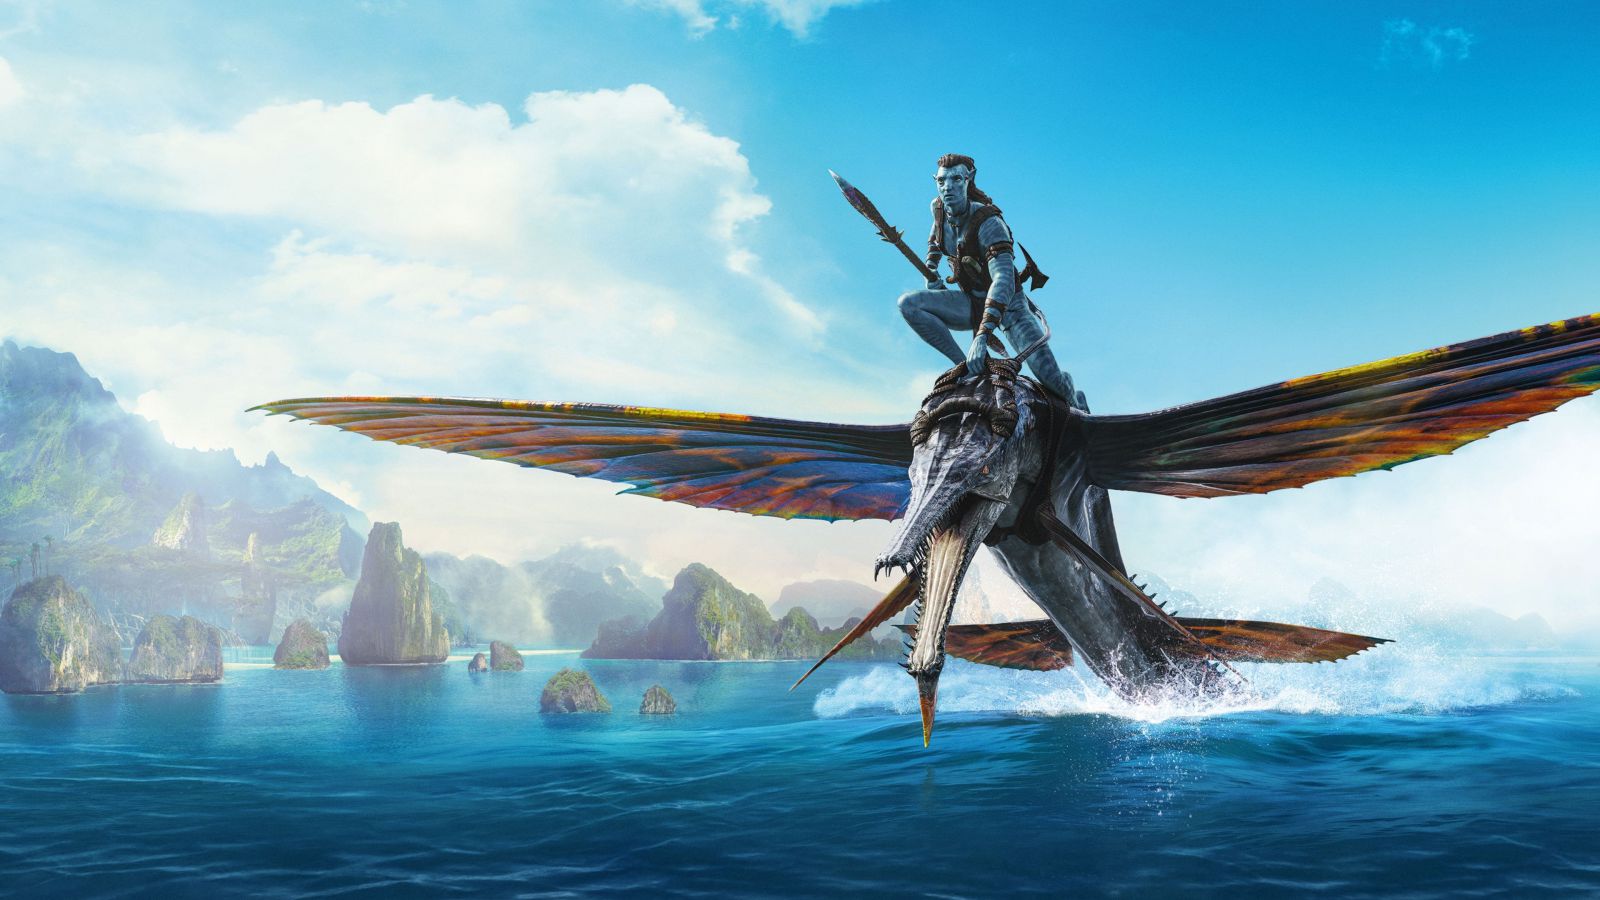 Watch Movie Avatar: The Way of Water (2022) Return to Pandora Full Movie Full HD